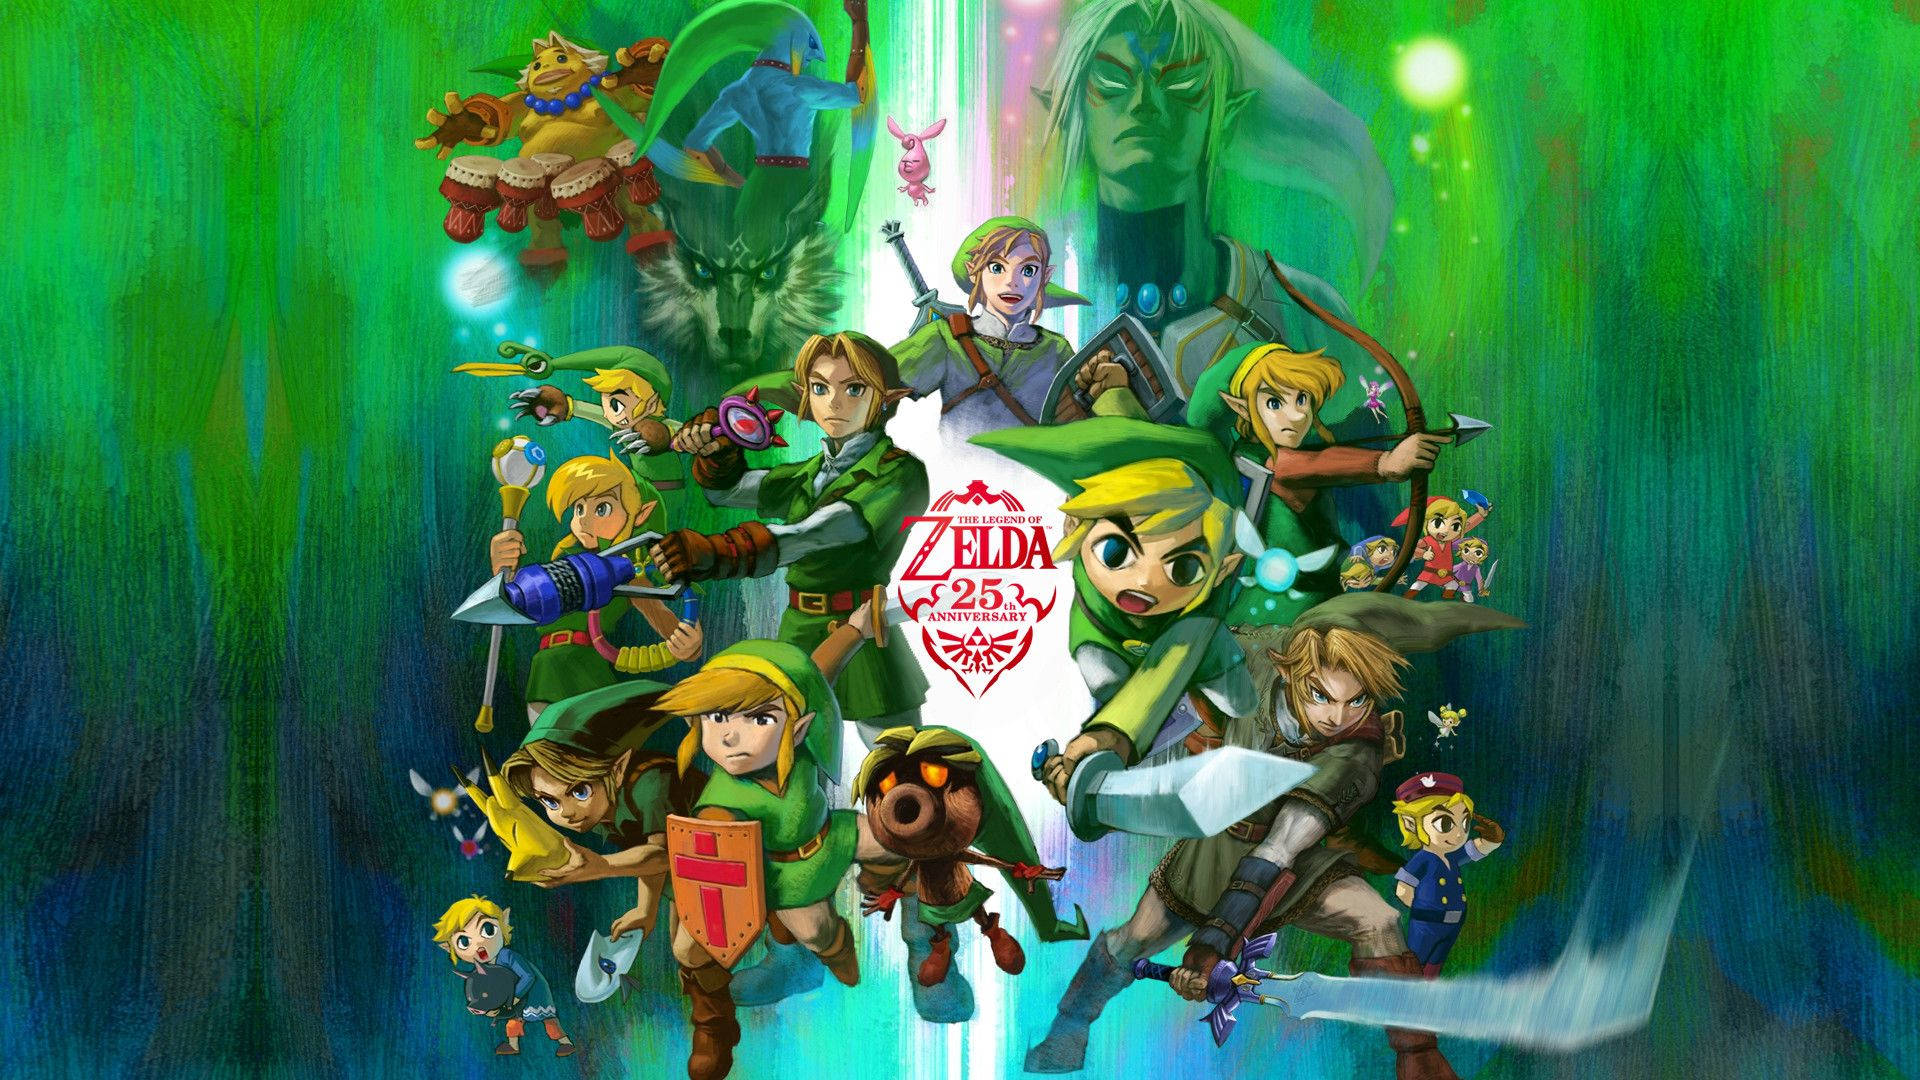 100+] Legend Of Zelda Wallpapers 